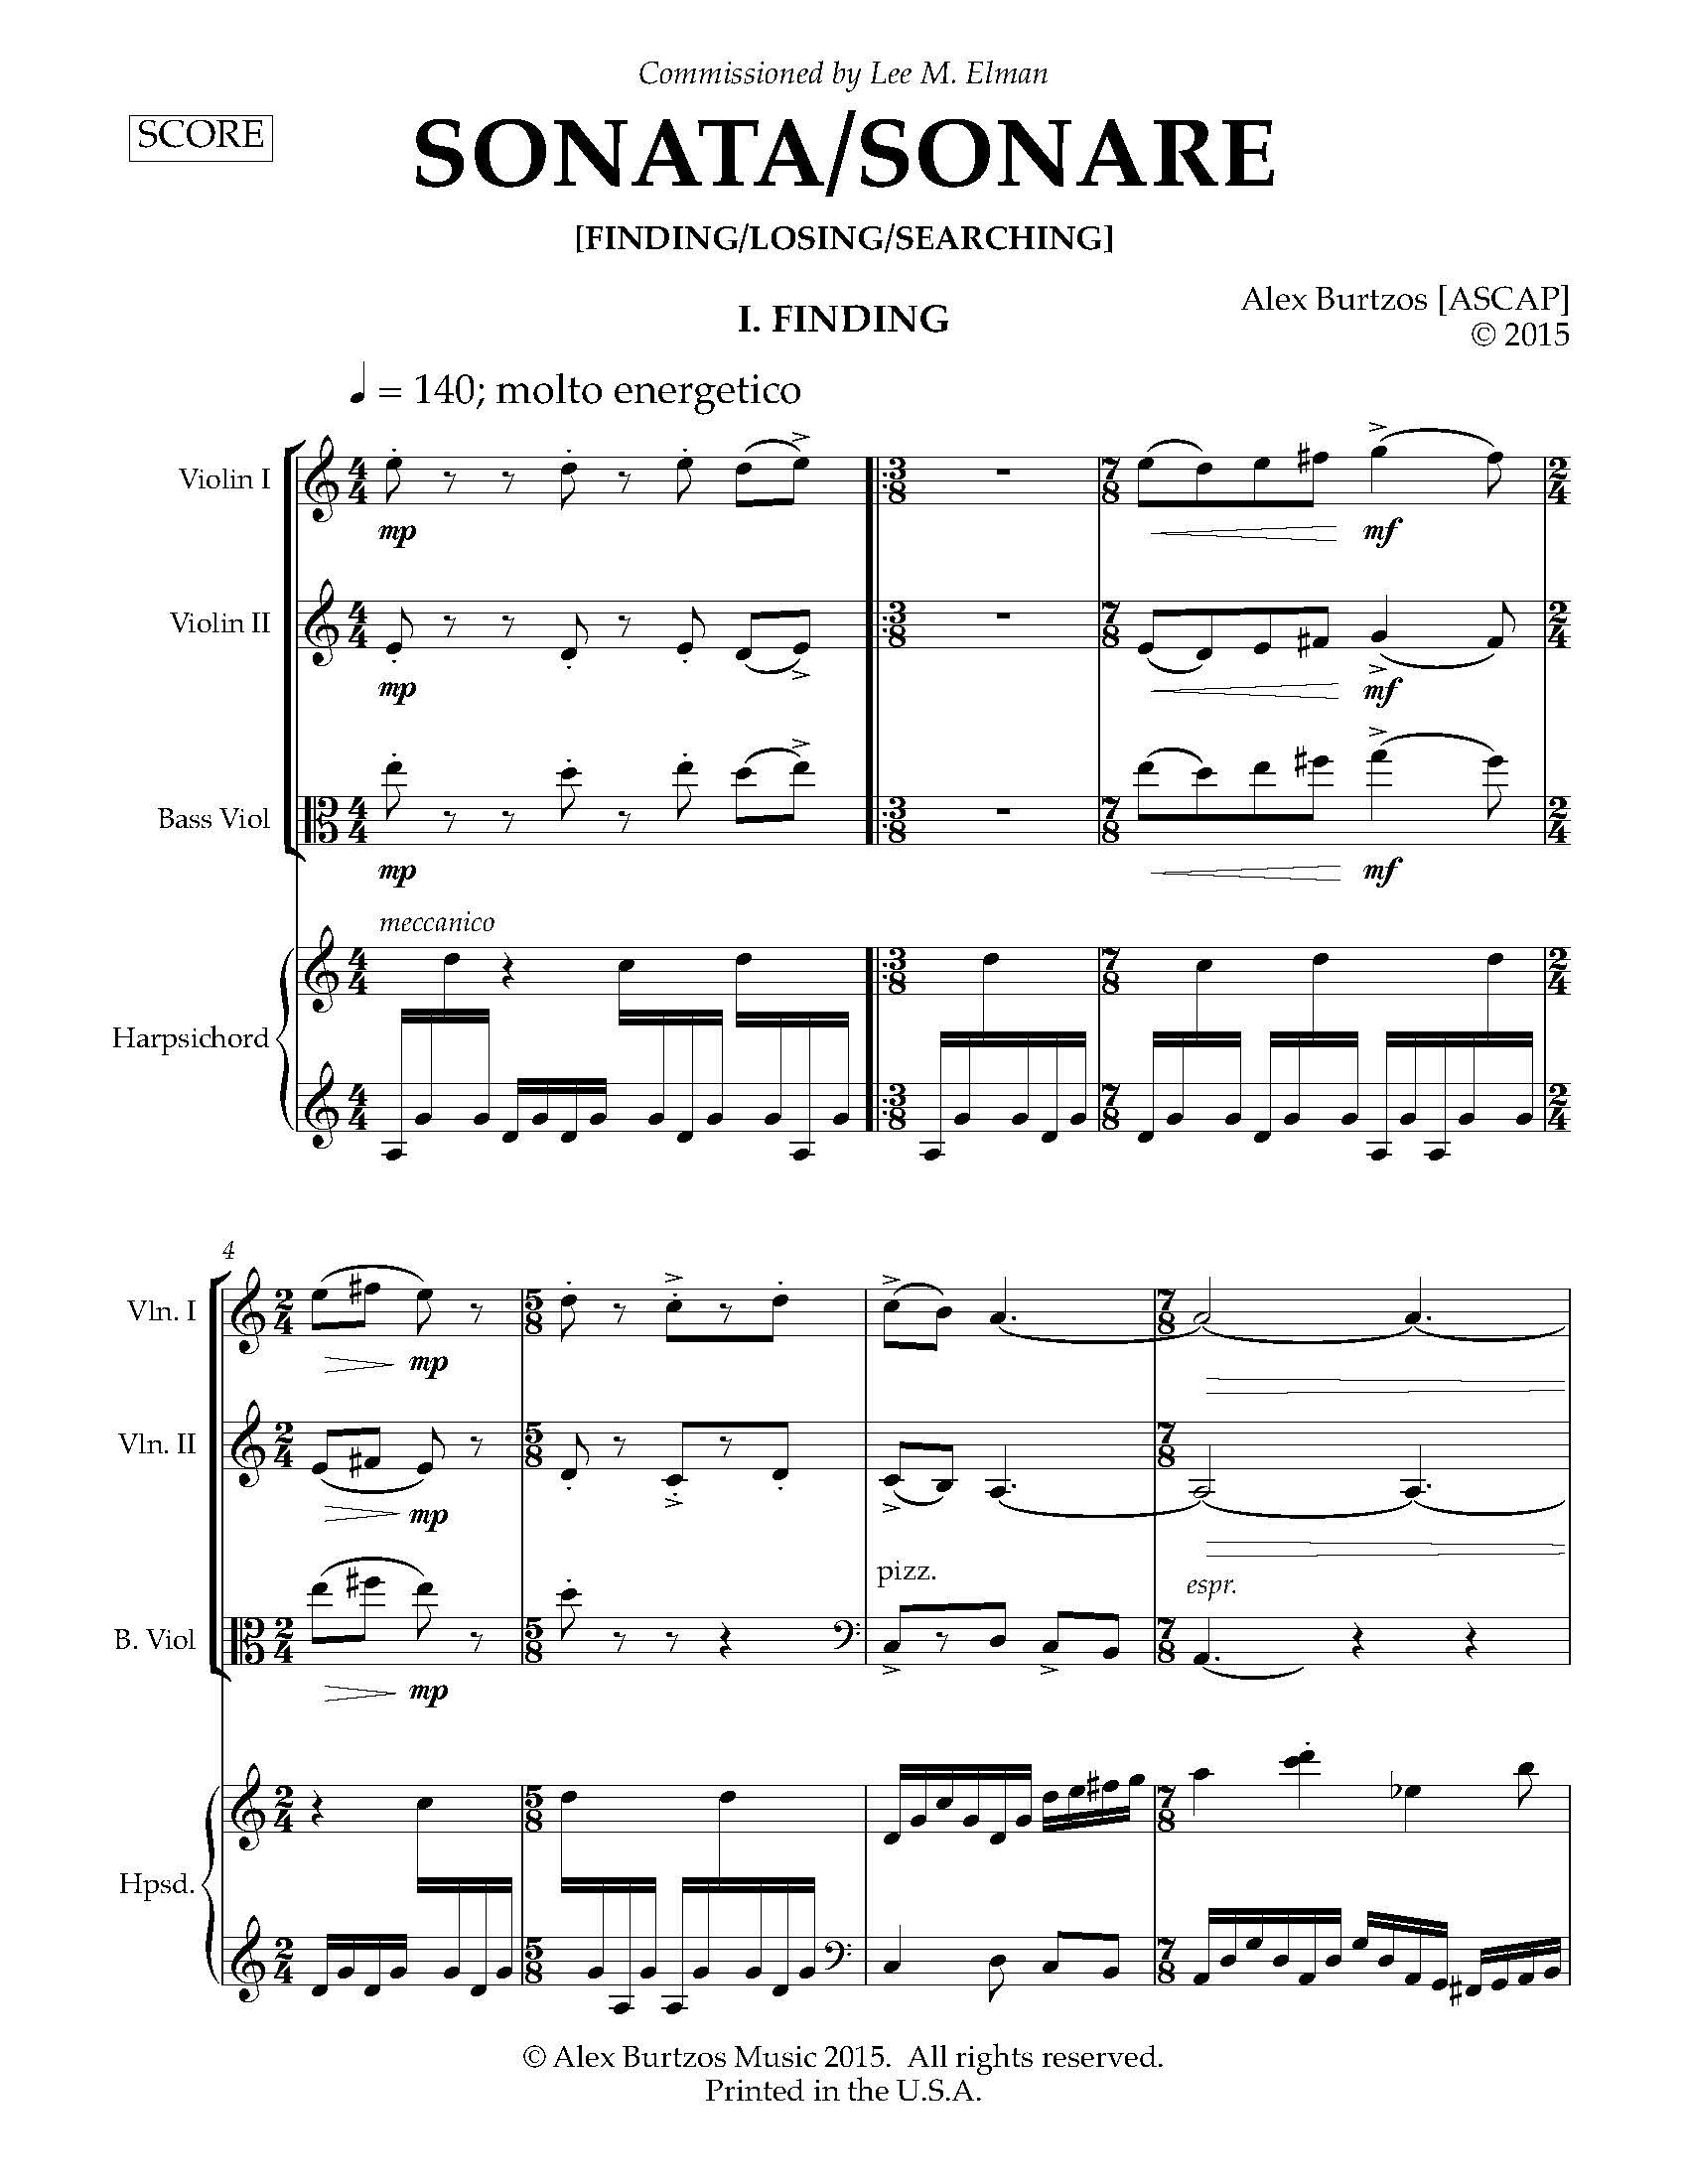 Sonata Sonare - Complete Score_Page_07.jpg